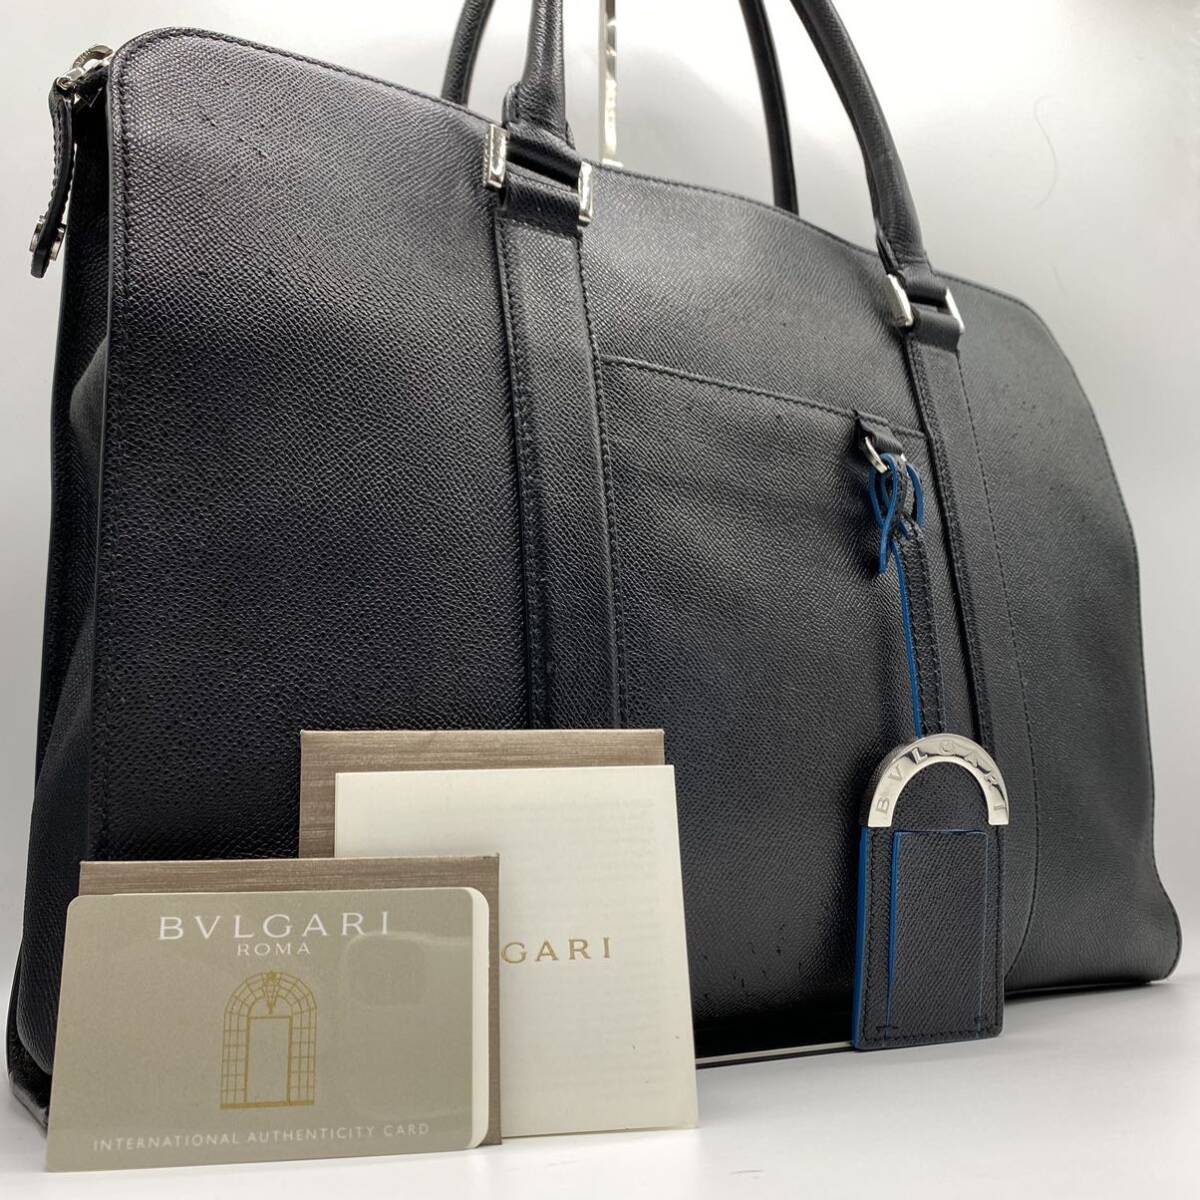 1 иен стандартный товар прекрасный товар BVLGARI BVLGARY man мужской портфель портфель серый n машина f кожа натуральная кожа черный ходить на работу гарантия 